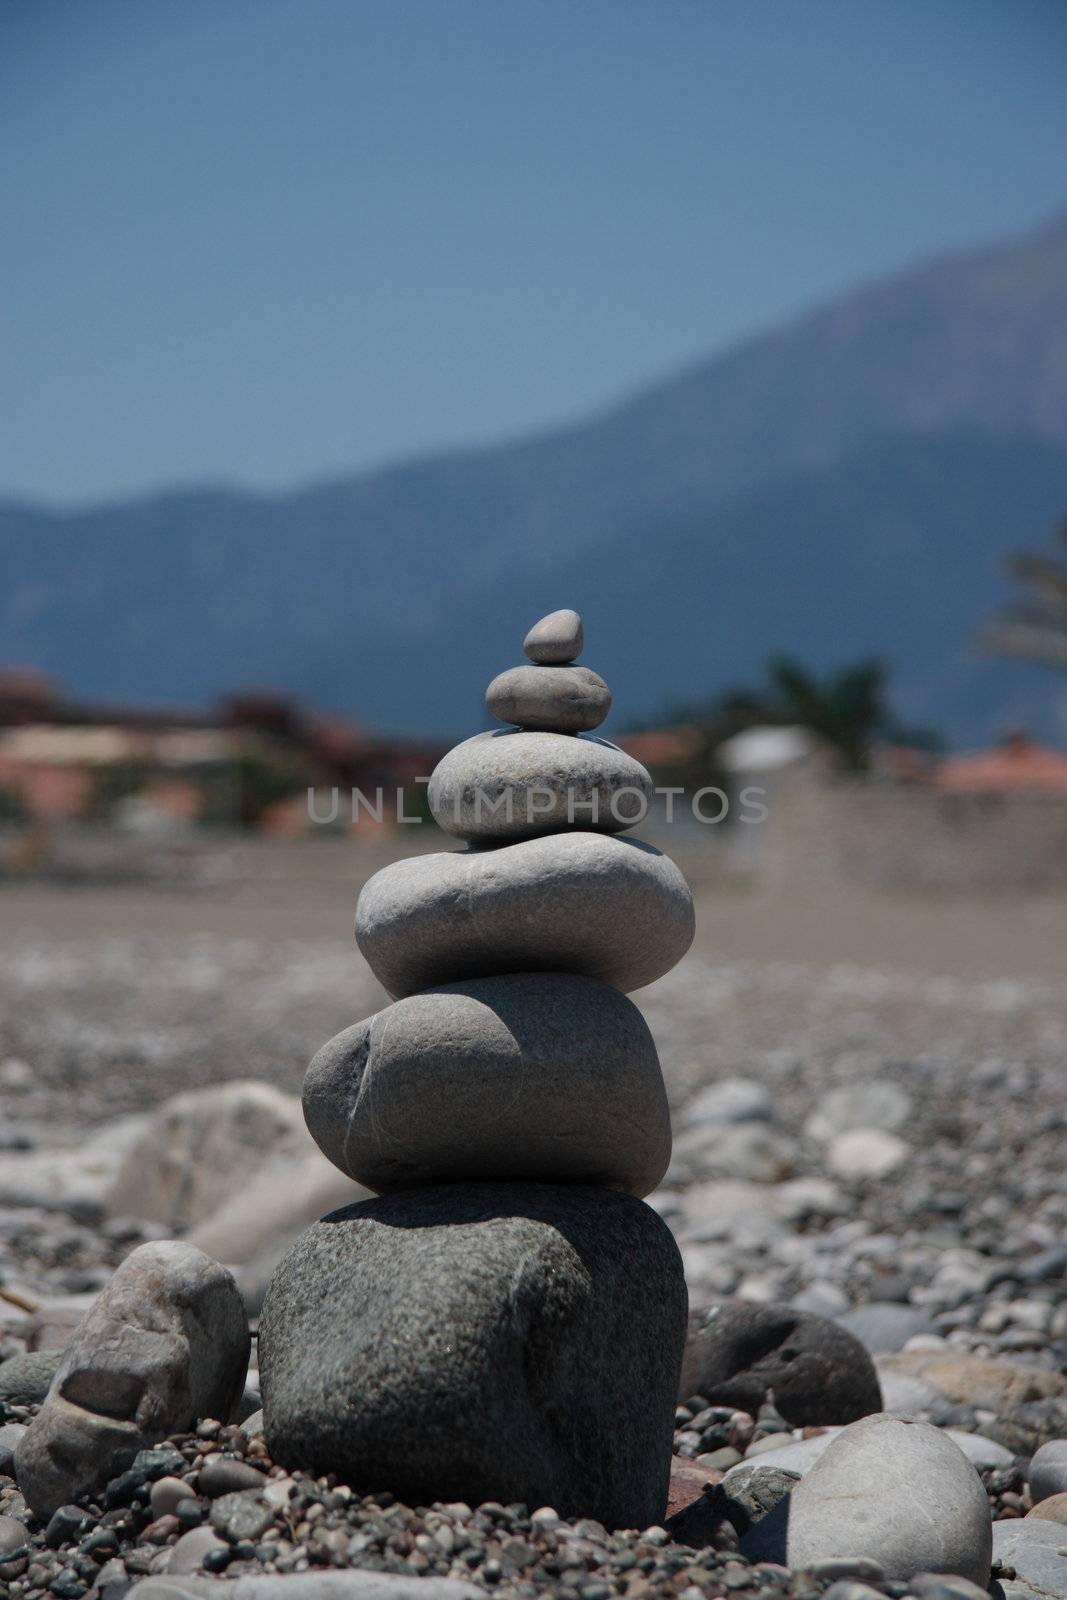 Stones in the desert by Kudryashka